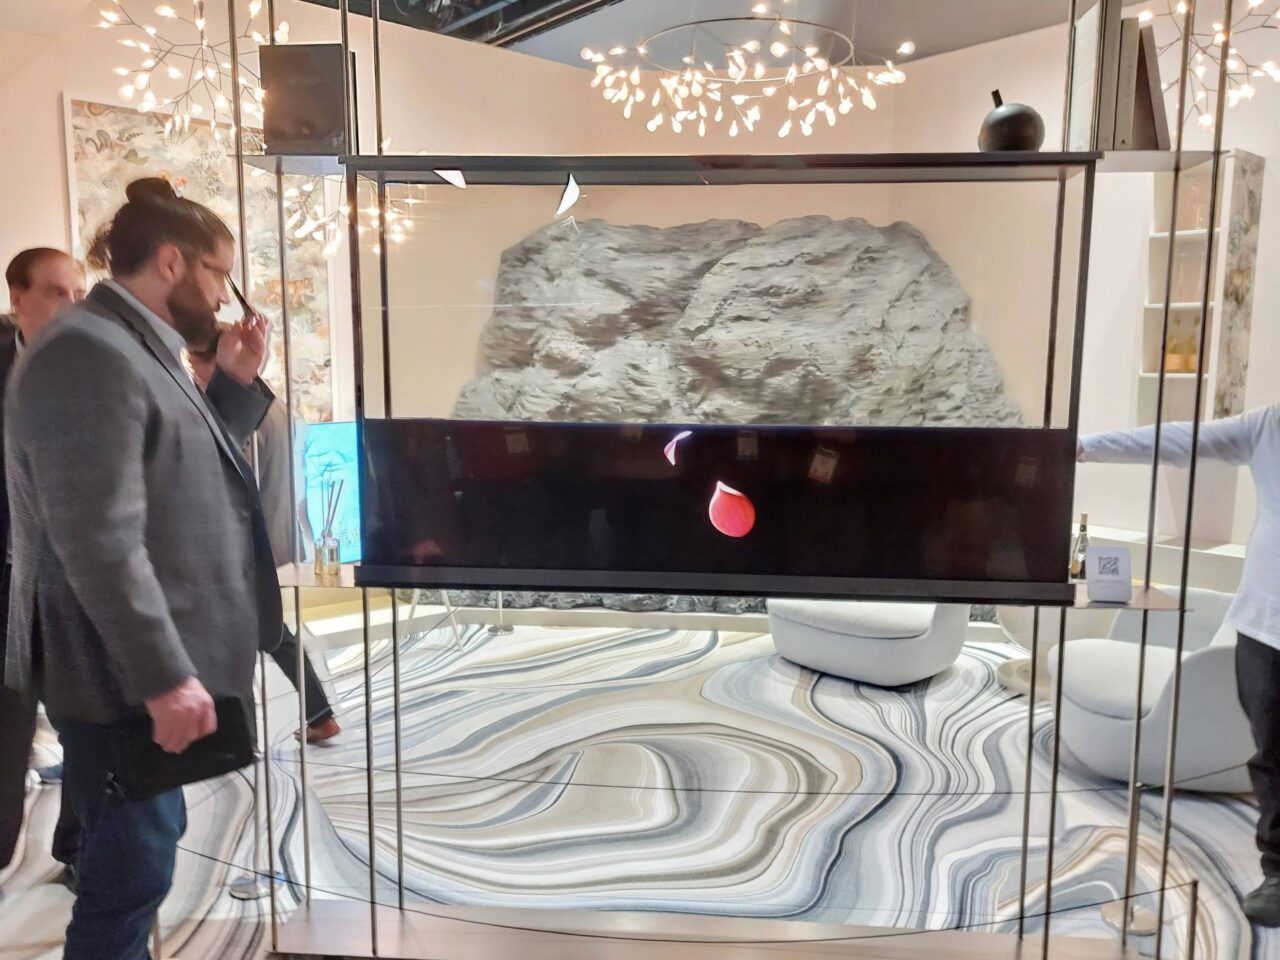 Przezroczysty telewizor LG Signature OLED T, w tle sztuczne skały, widoczni ludzie i elementy dekoracyjne wnętrza na stoisku.